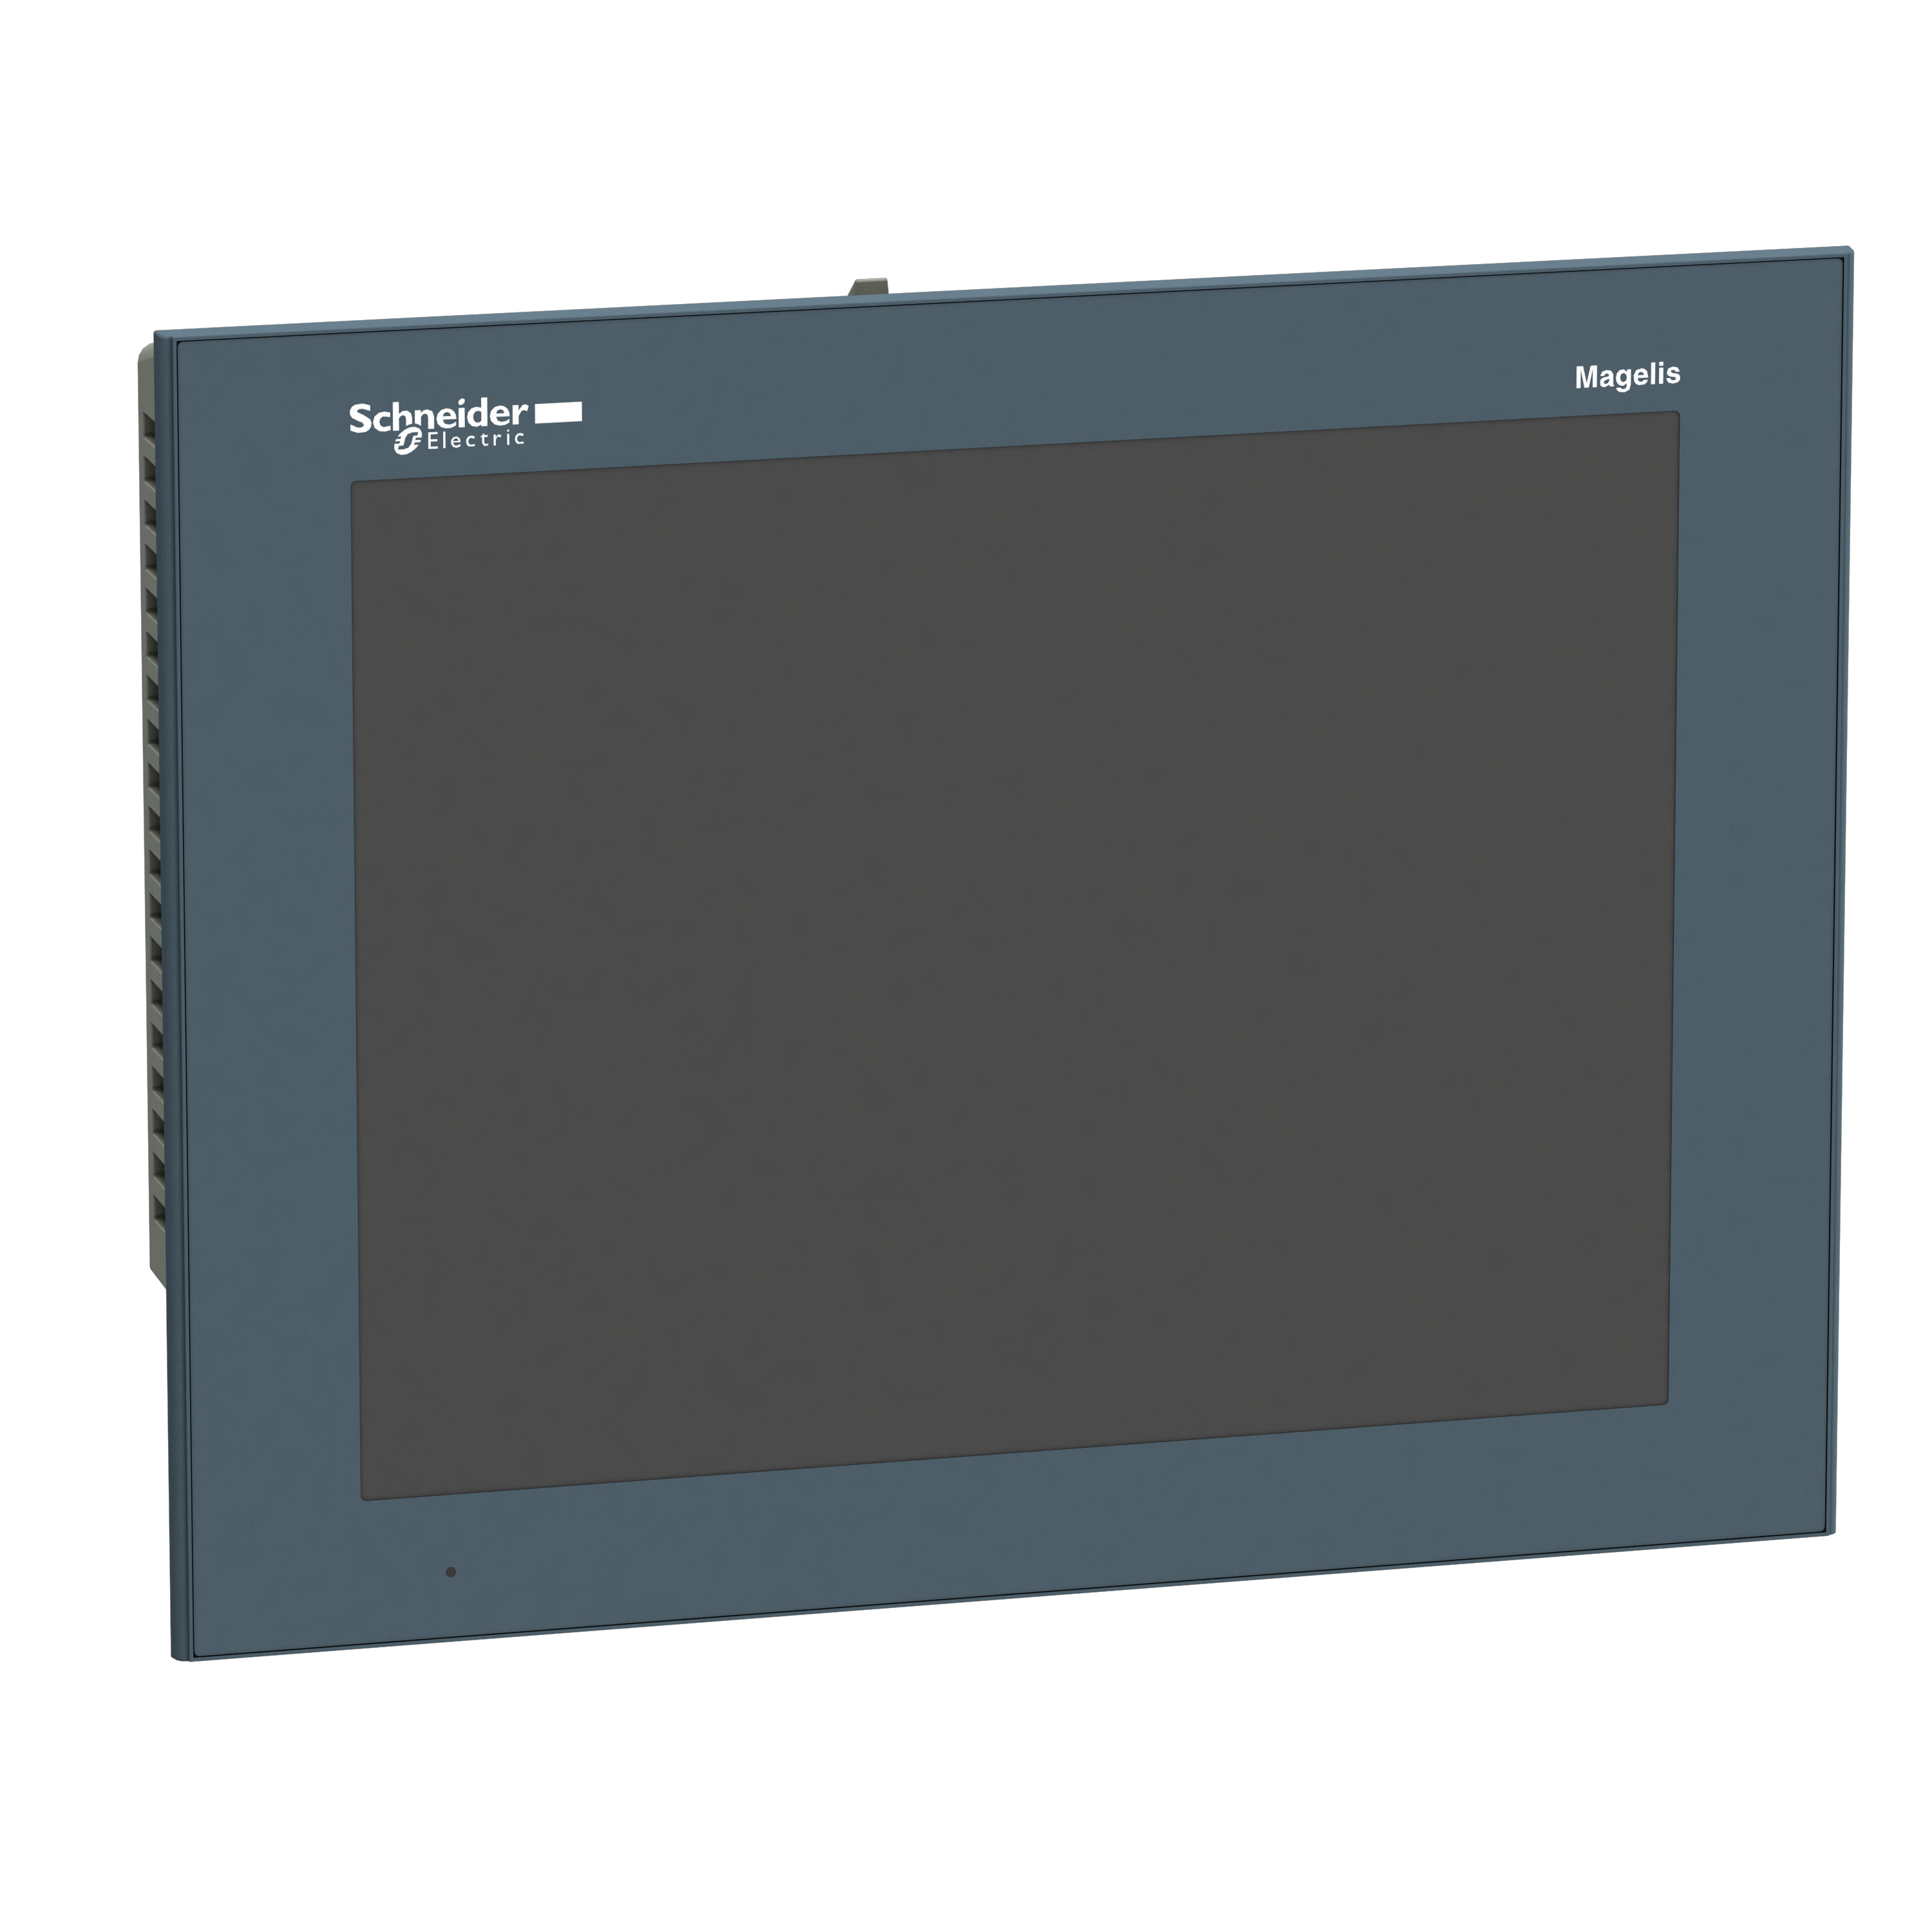 Magelis GTO advanced touchscreen panel 12.1" TFT 